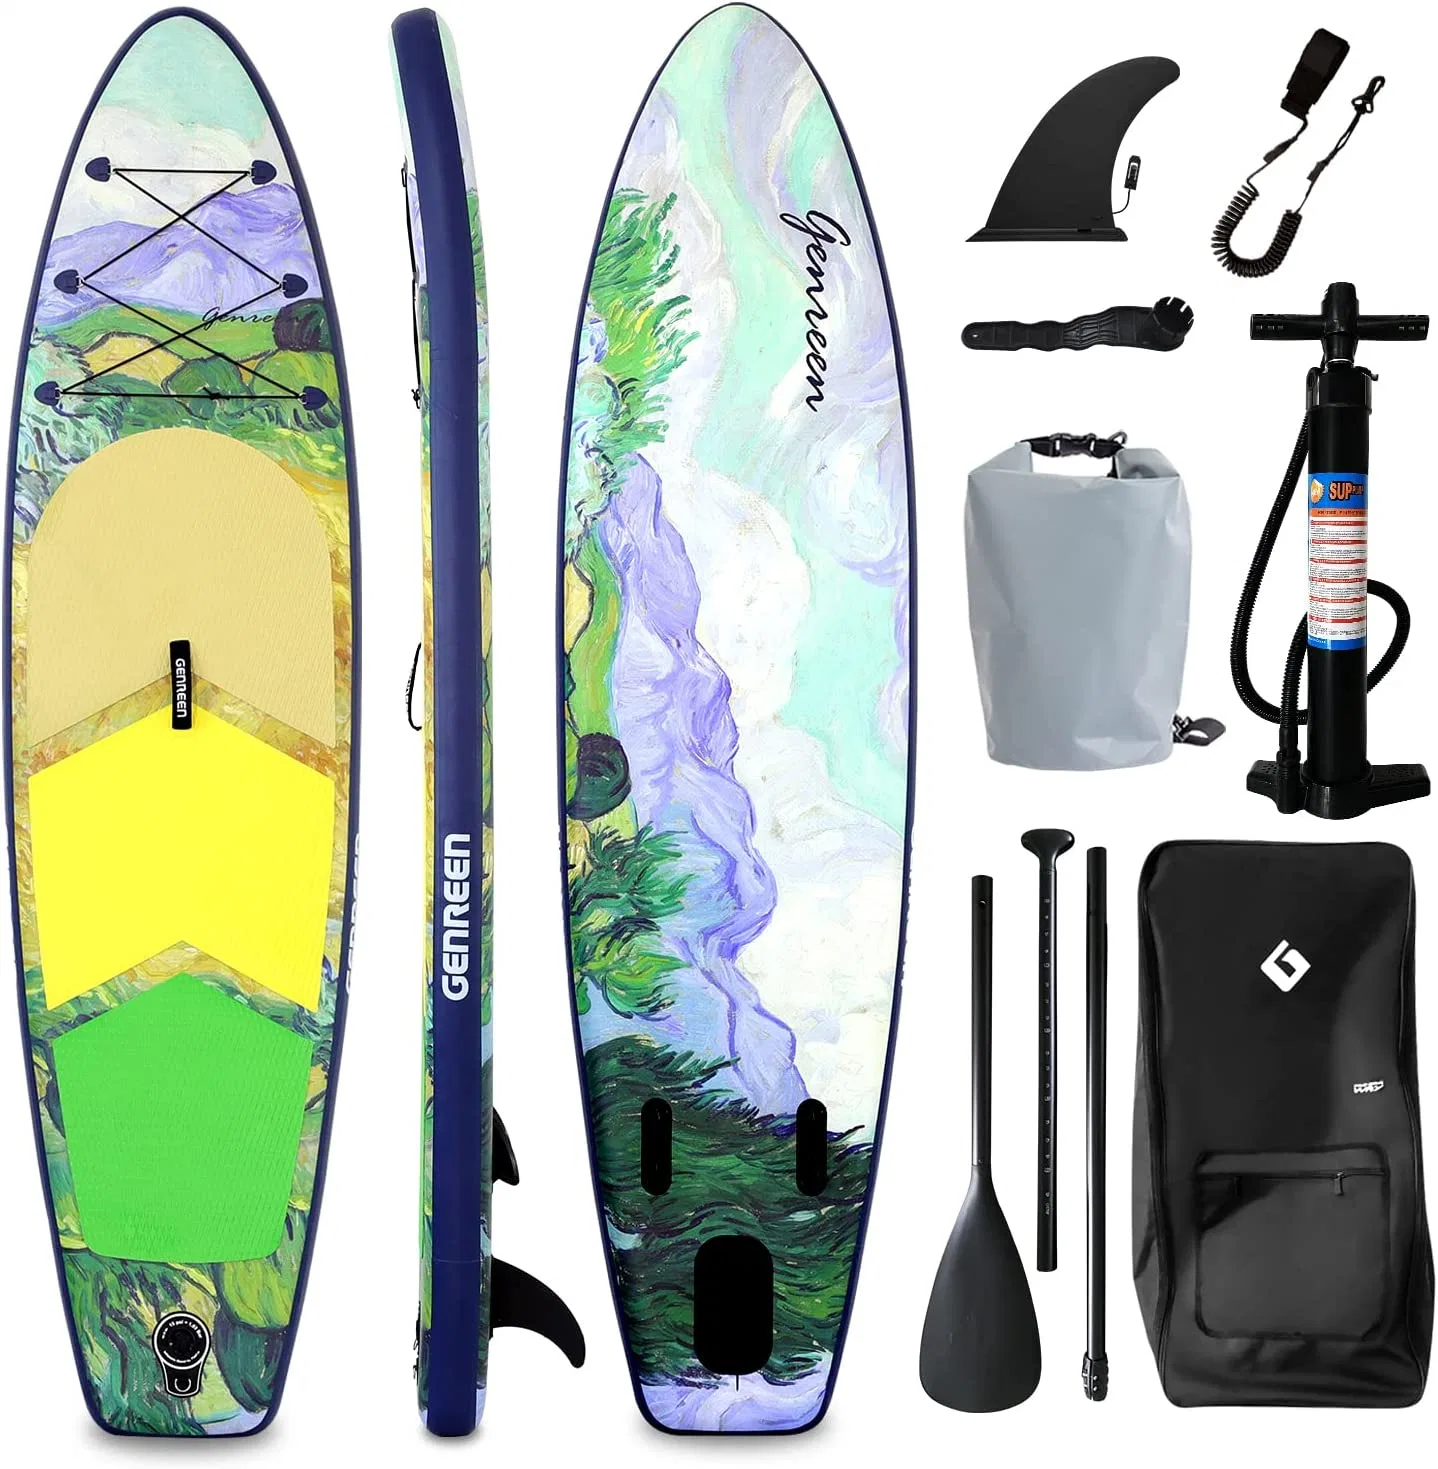 Almofada insuflável Stand up Paddle Board Non-Slip Deck com acessórios Sup Premium perfeito para jovens adultos iniciante